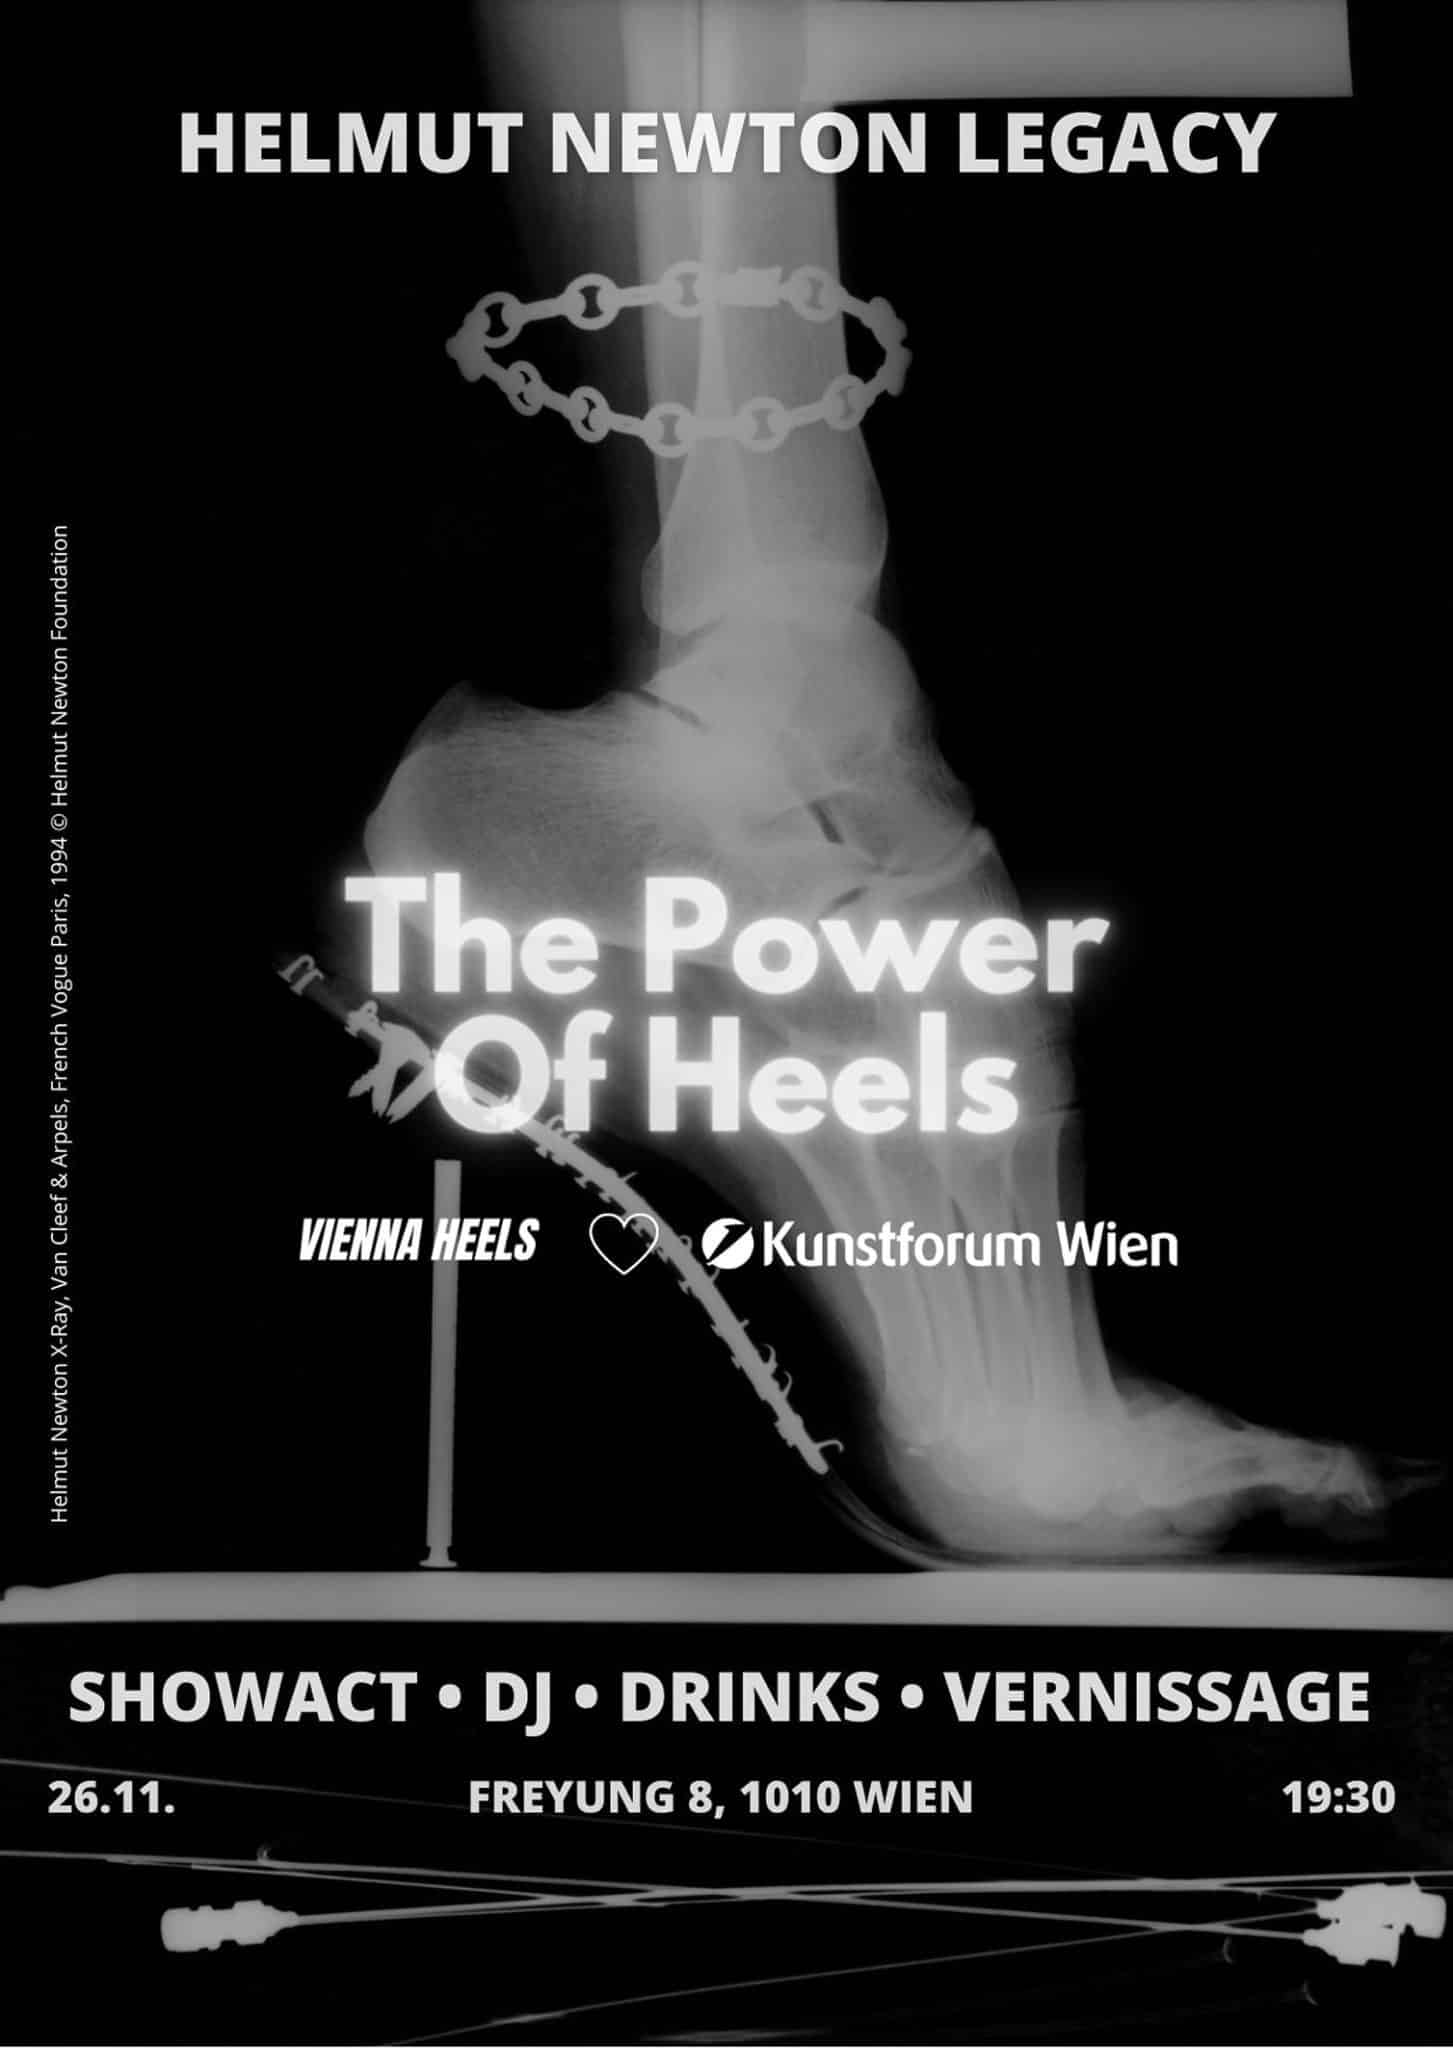 Tanzperformance "The Power of Heels" anlässlich der "Helmut Newton Legacy" im Kunstforum Wien.